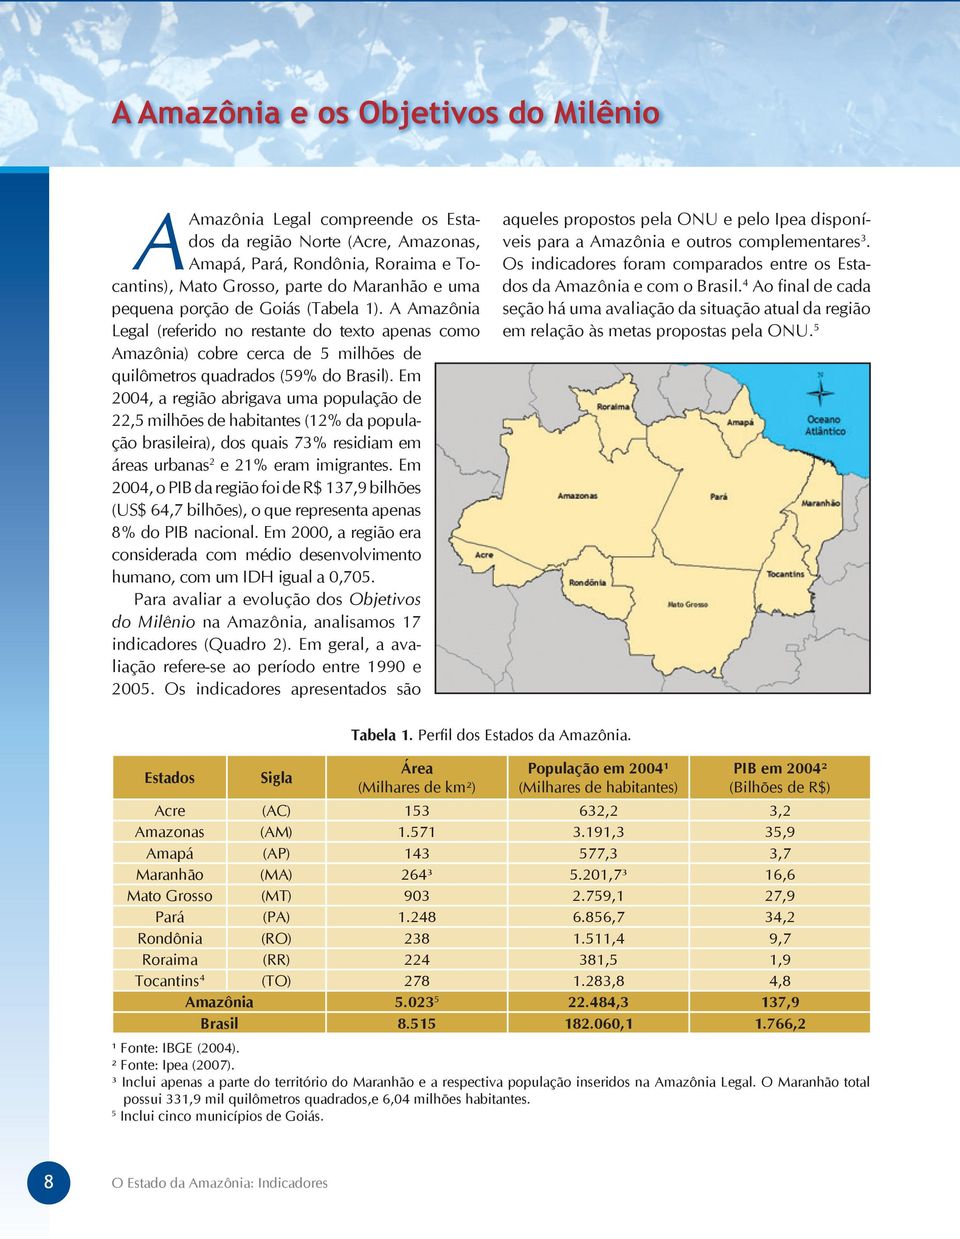 Em 2004, a região abrigava uma população de 22,5 milhões de habitantes (12% da população brasileira), dos quais 73% residiam em áreas urbanas 2 e 21% eram imigrantes.